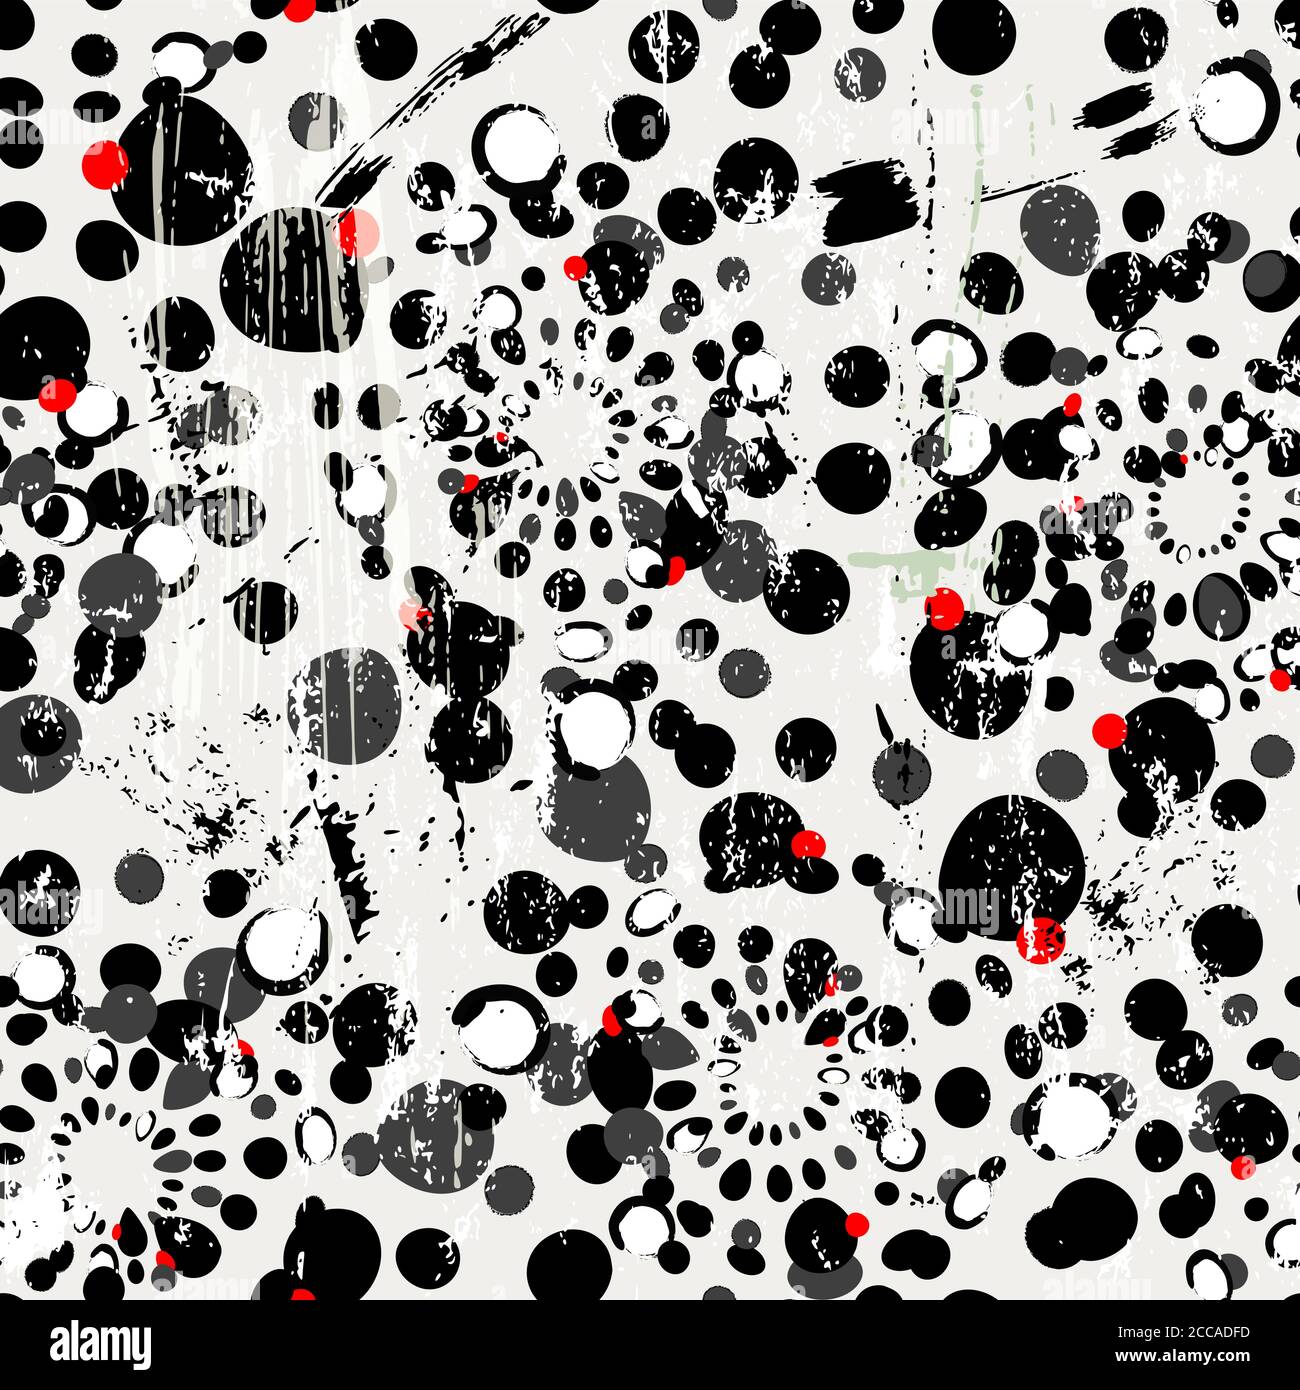 Nahtloses Muster Hintergrund, Punkte, mit Striche und Spritzer, schwarz und weiß, grungy Stock Vektor